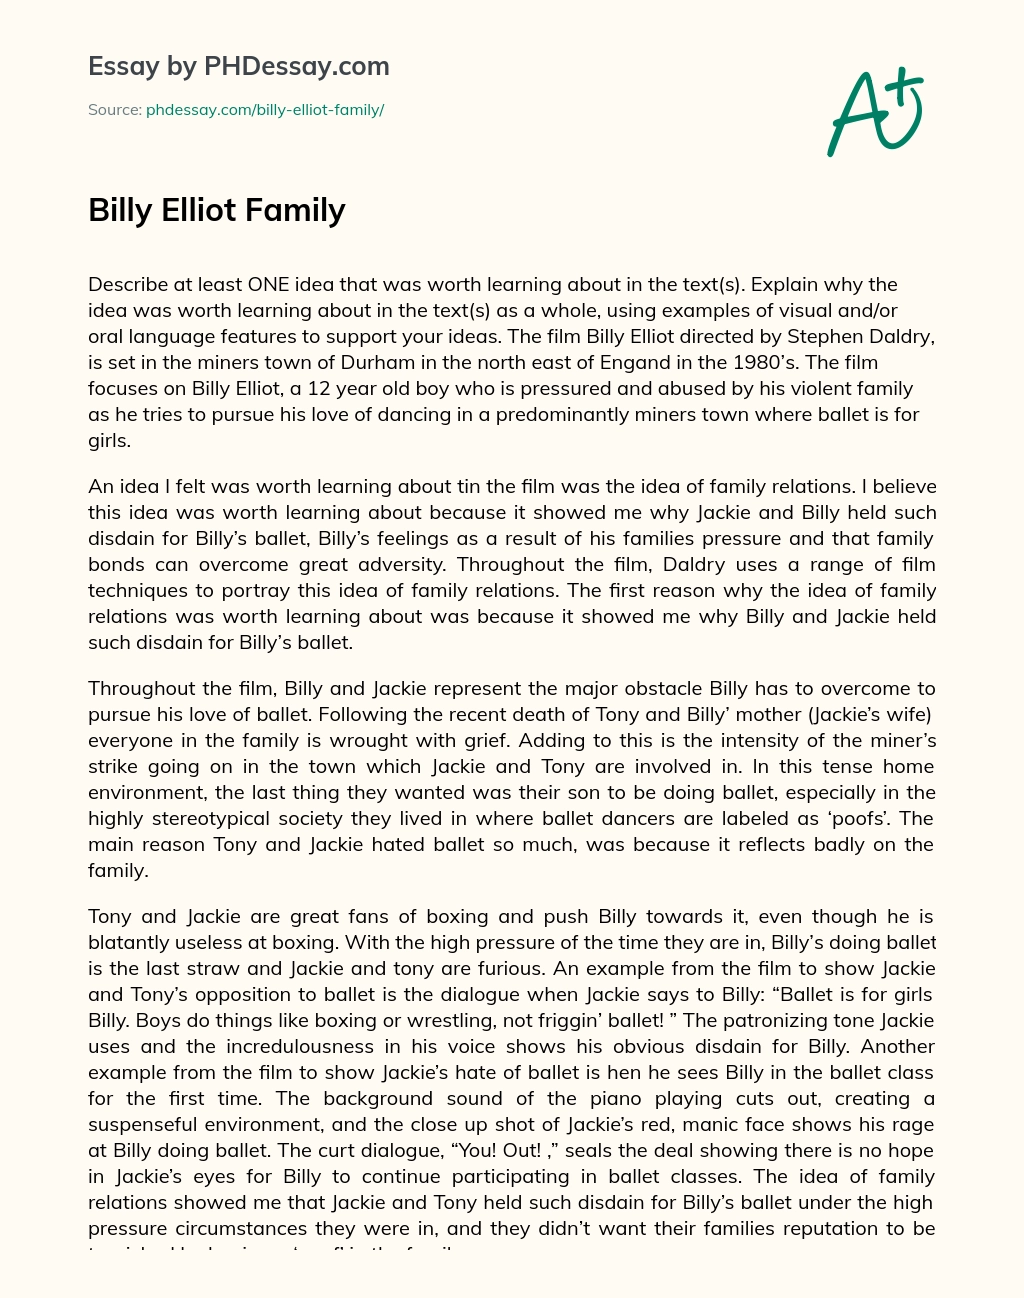 Billy Elliot Family essay